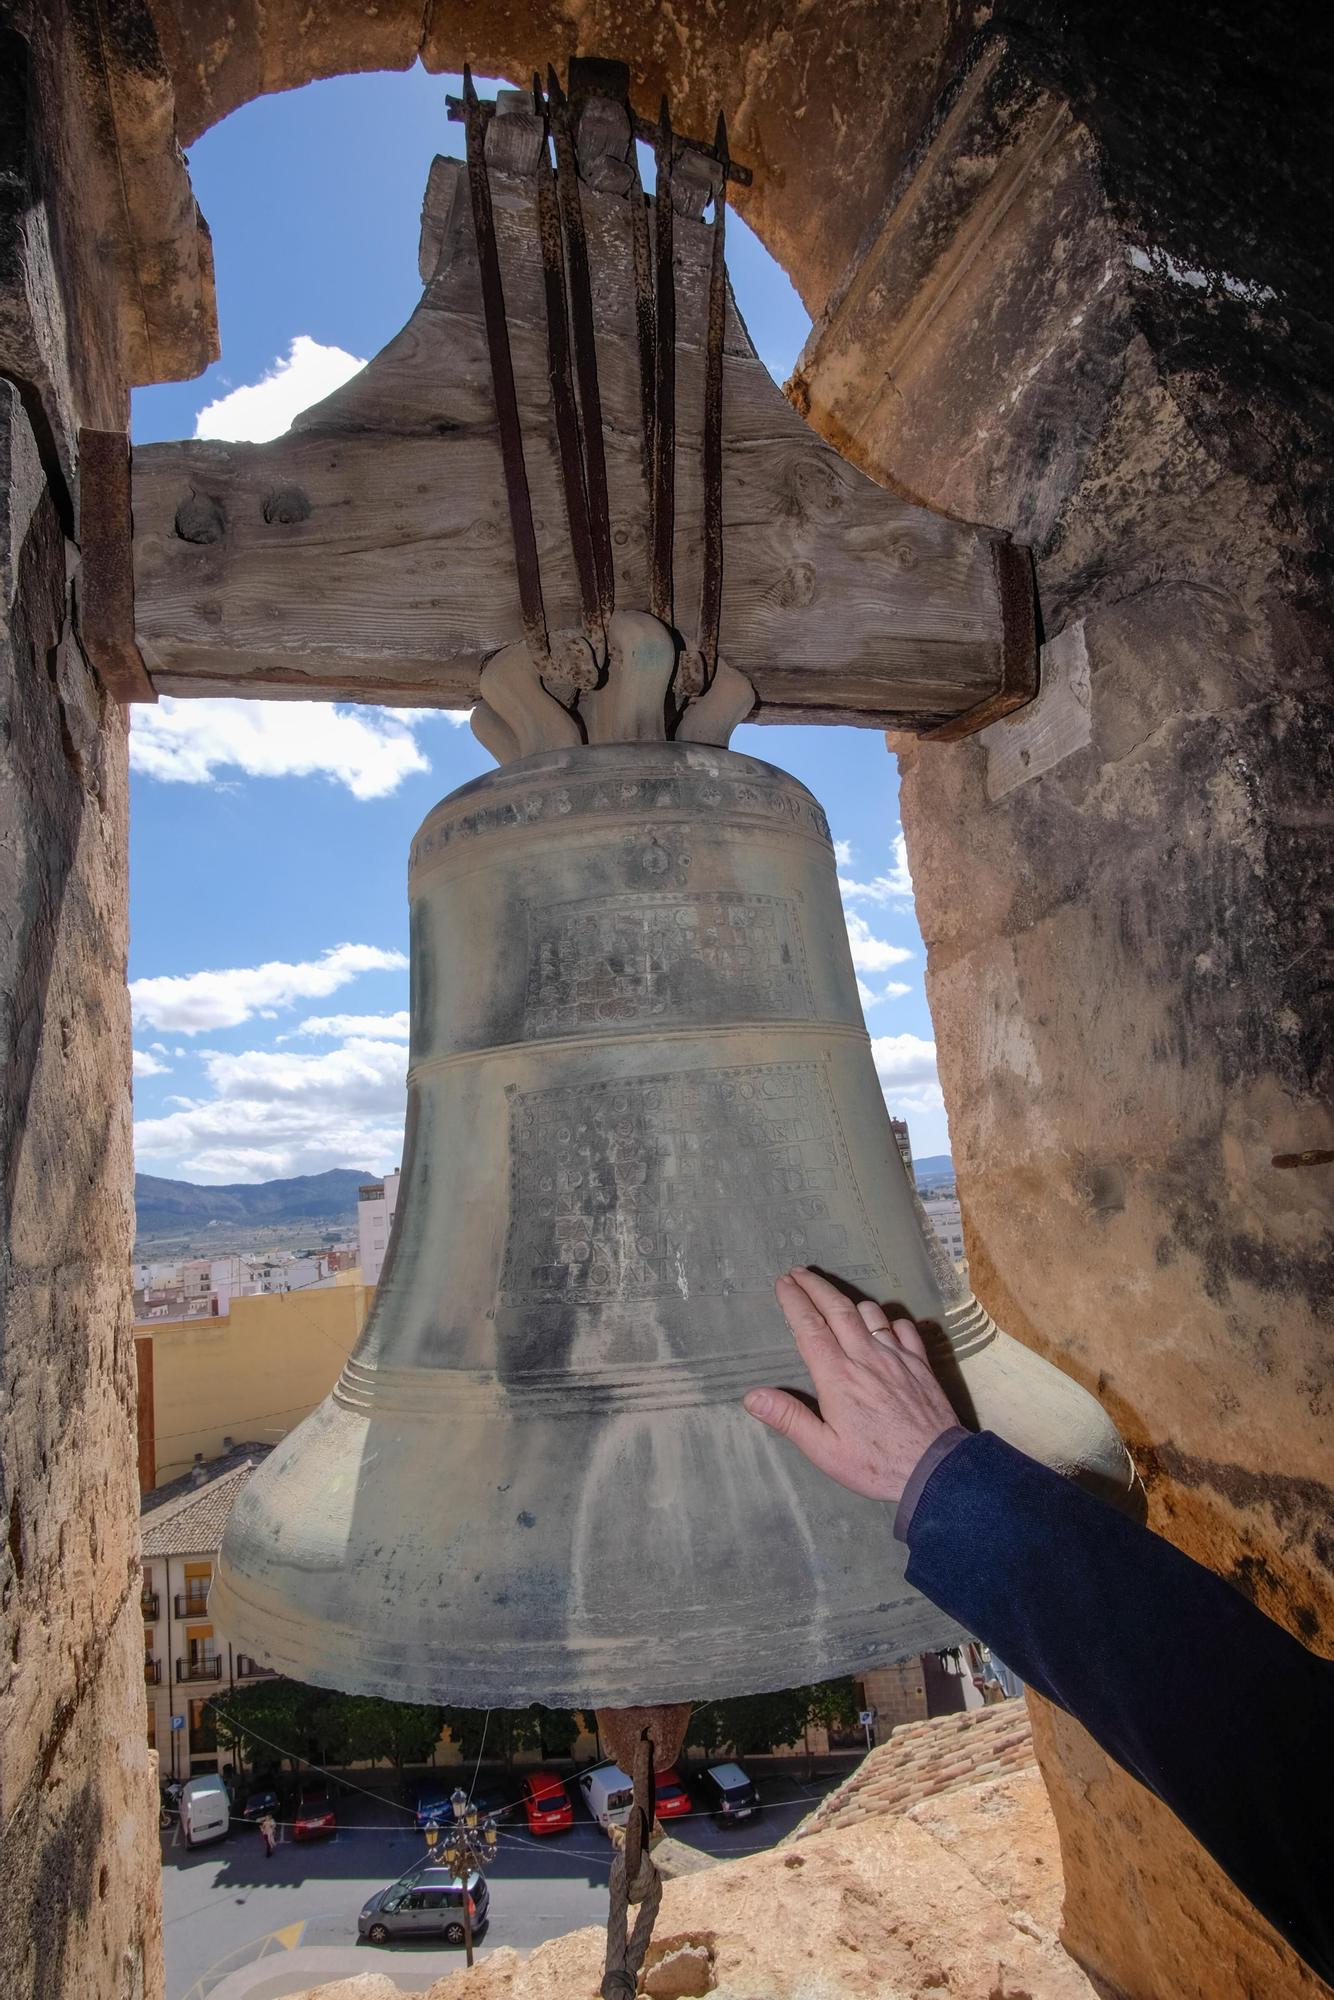 Las campanas forman parte de la historia y la cultura de los pueblos.